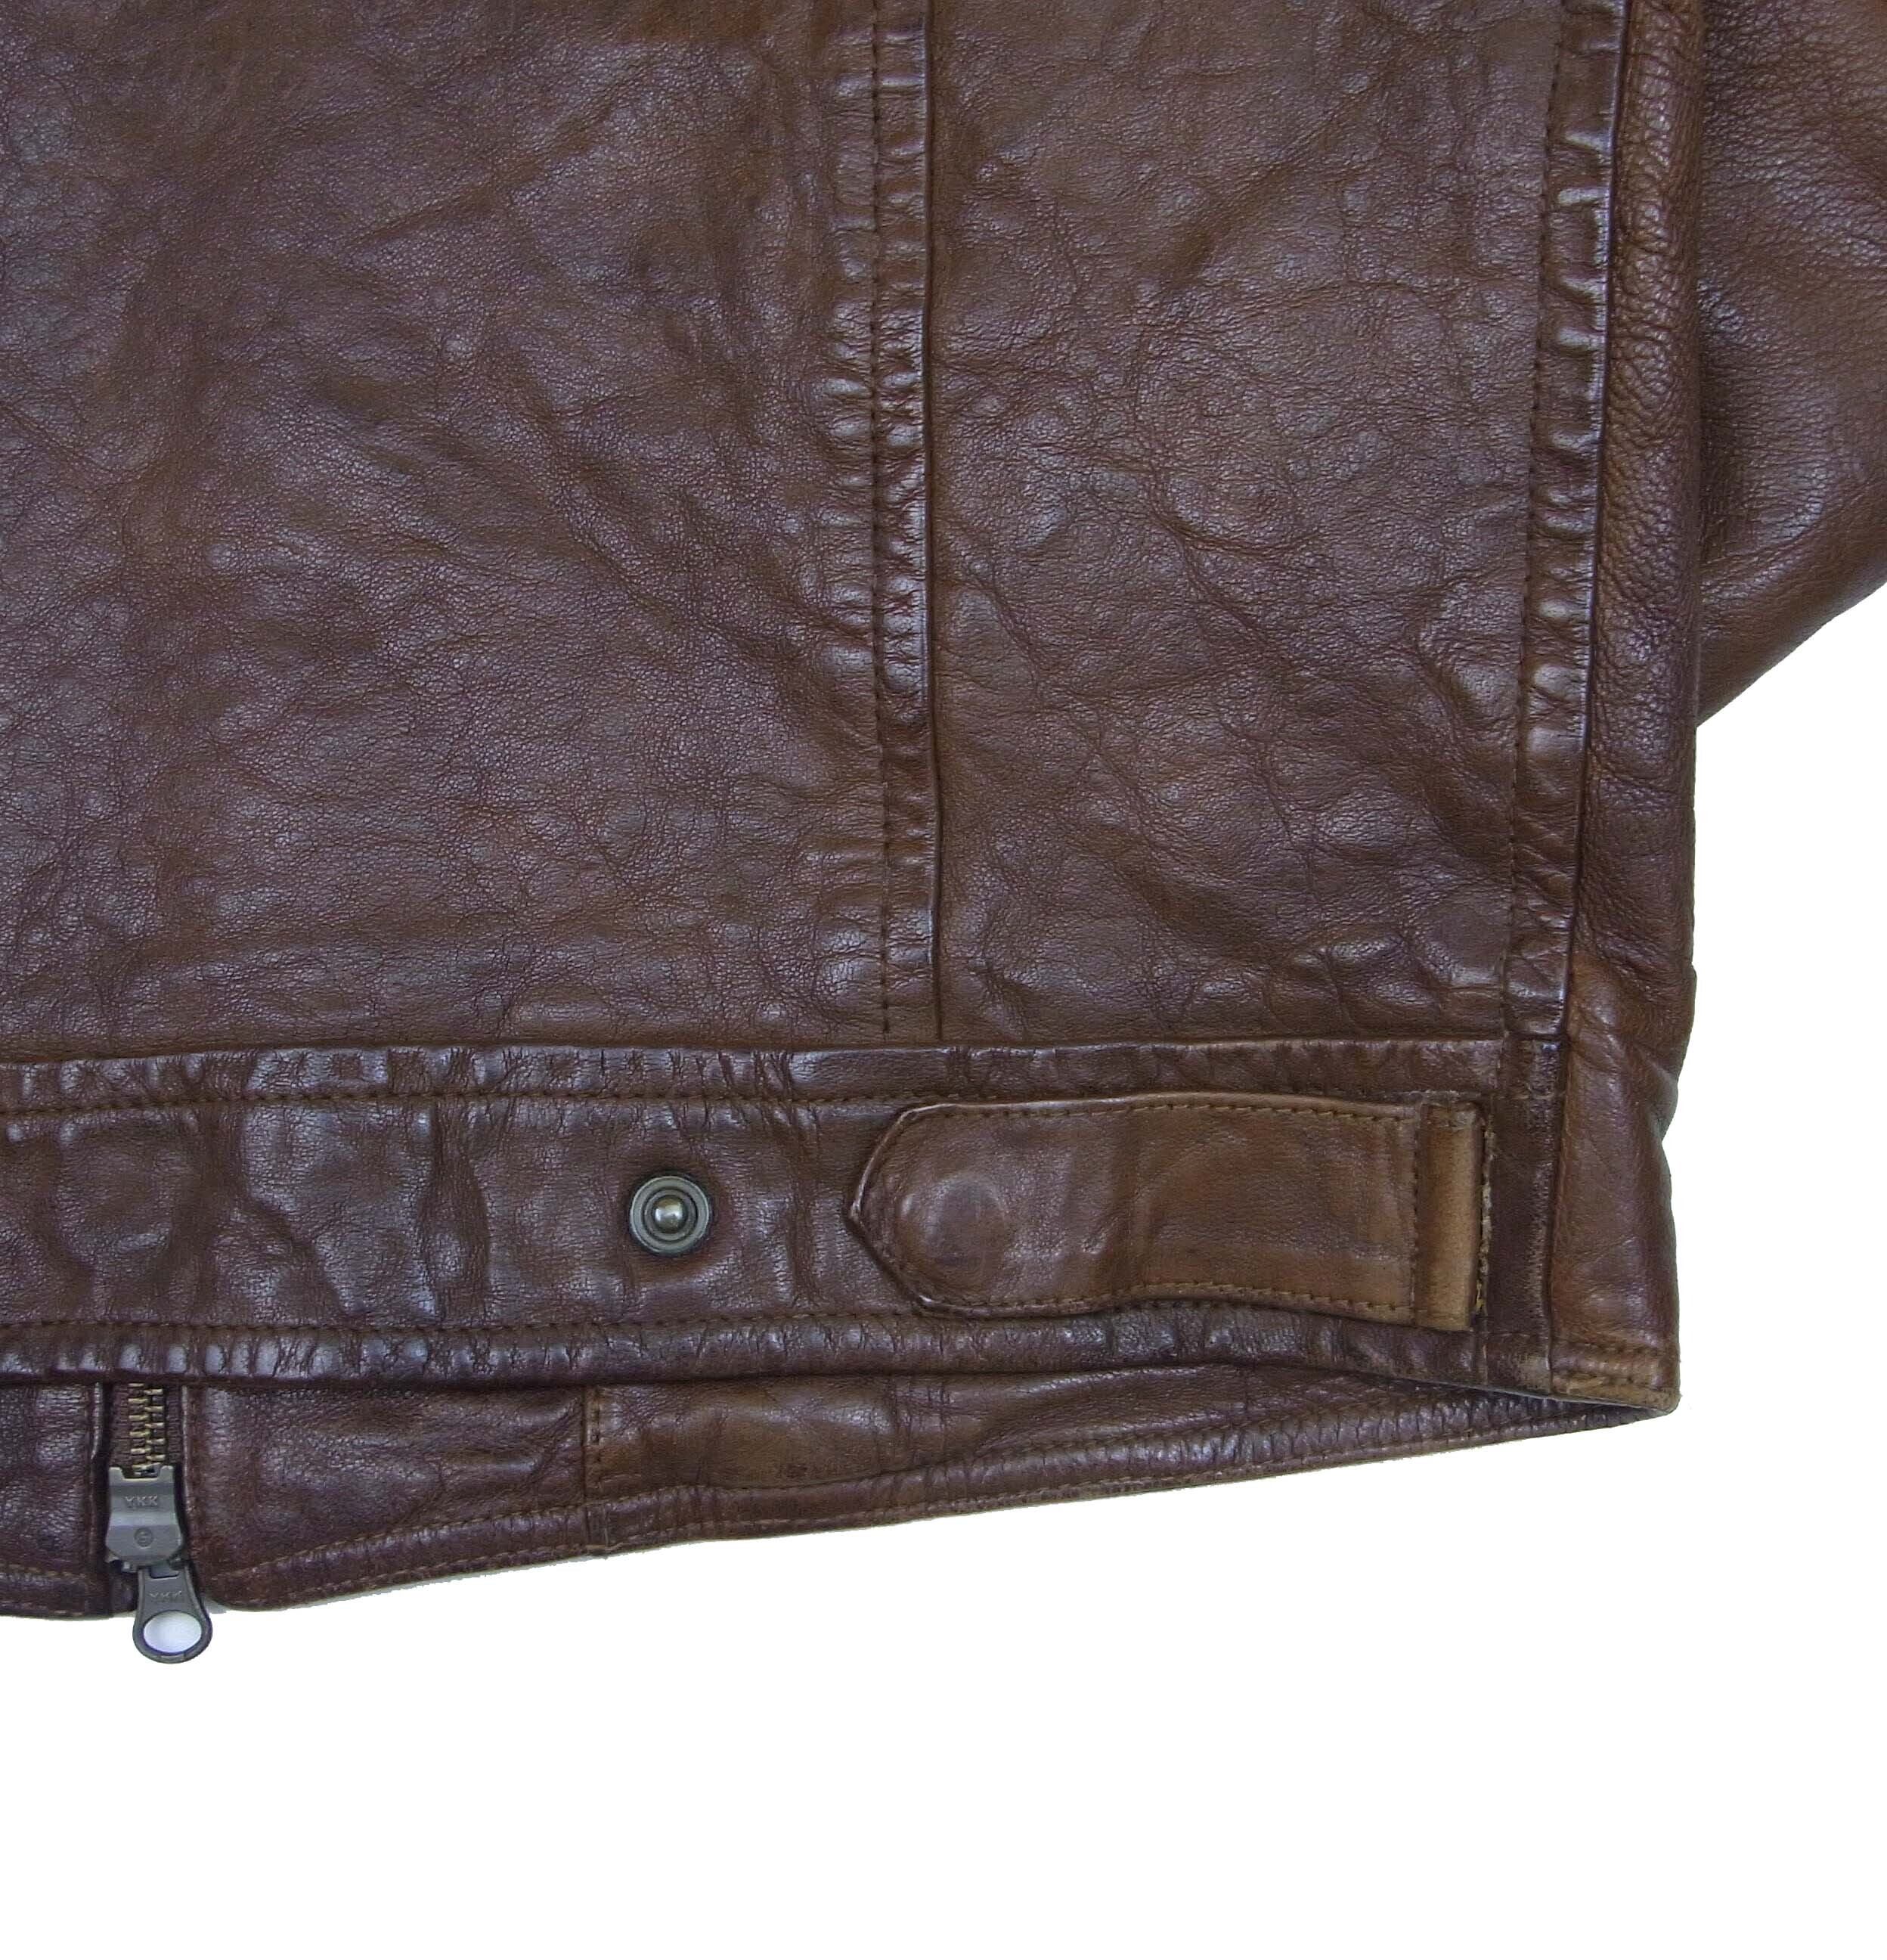 90’ CABANE de ZUCCA nylon jacket